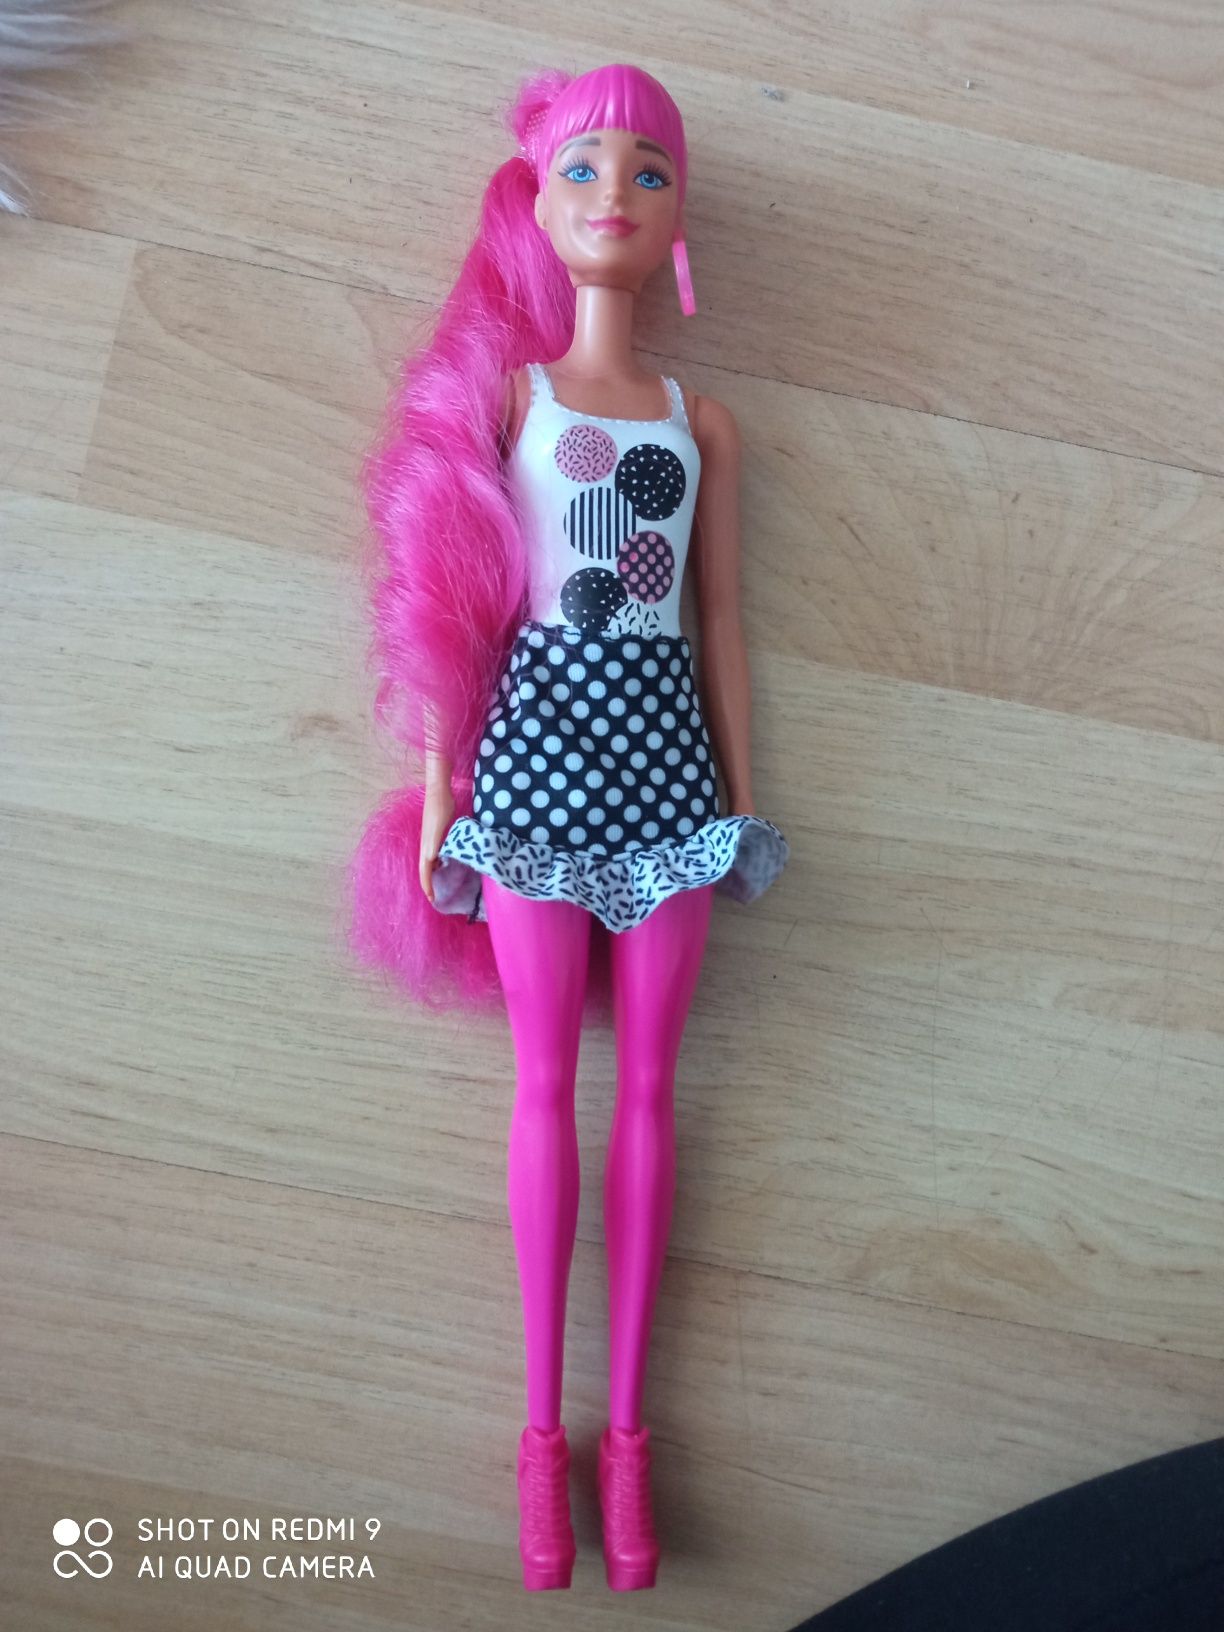 Lalka Barbie polecam